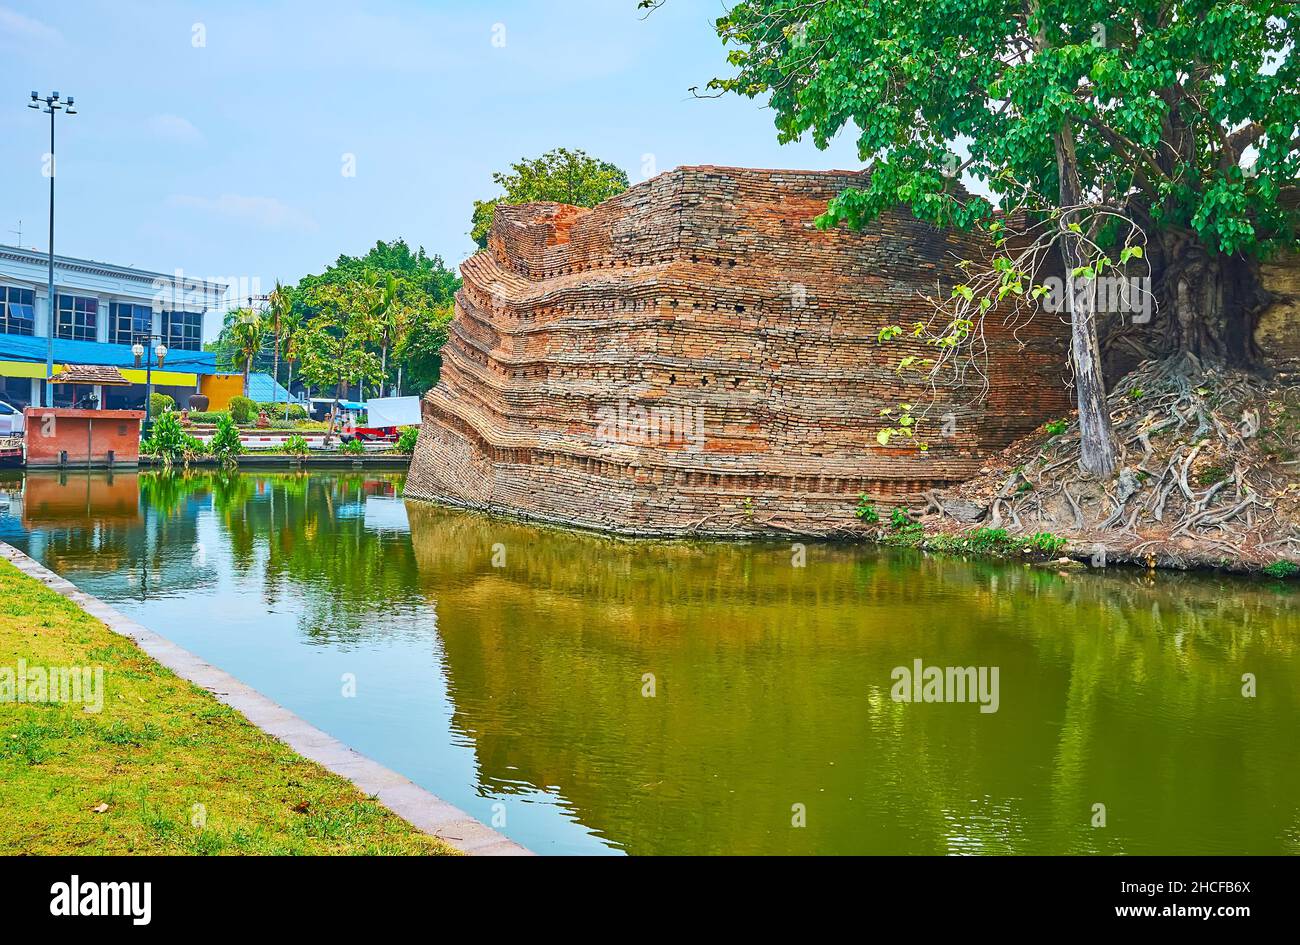 Le rovine in mattoni della torre medievale della Fortezza della Città Vecchia, riflettendo sulla superficie del canale Old City Moat, si Phum Corner, Chiang mai, Thailandia Foto Stock